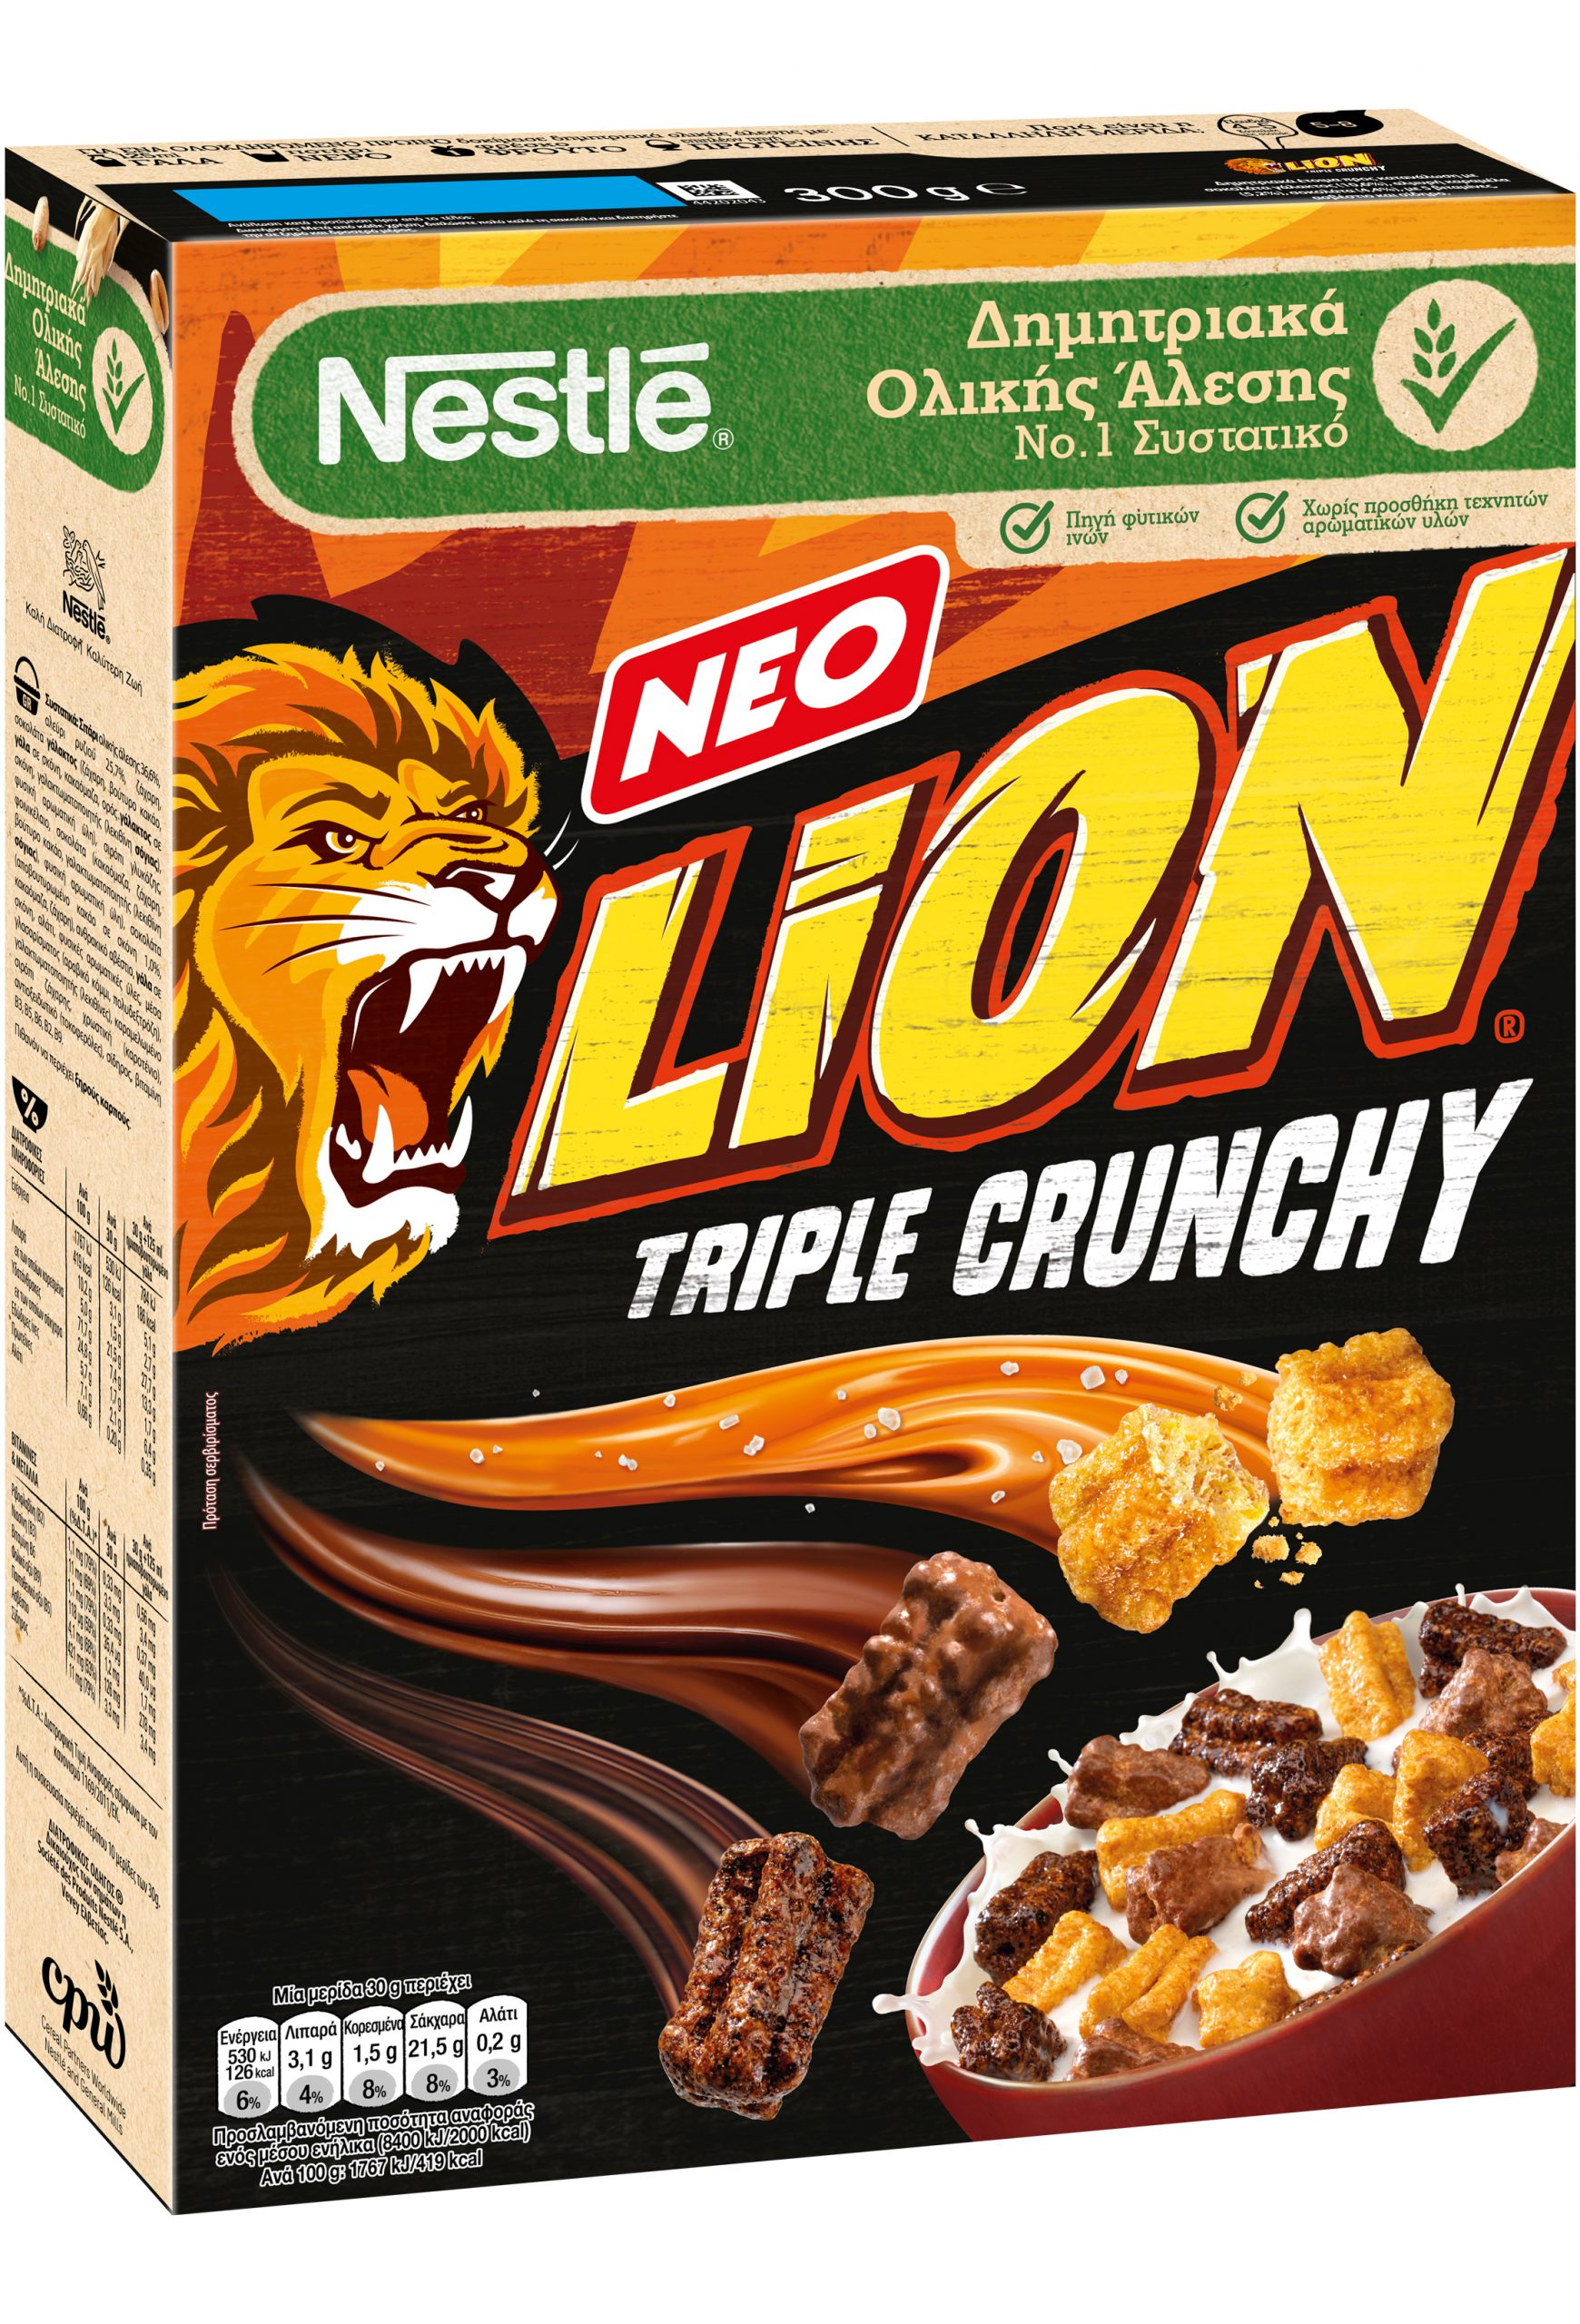 ΝΕΑ Δημητριακά LION Triple Crunchy: Η τριπλή τραγανή απόλαυση που θα σε ενθουσιάσει!